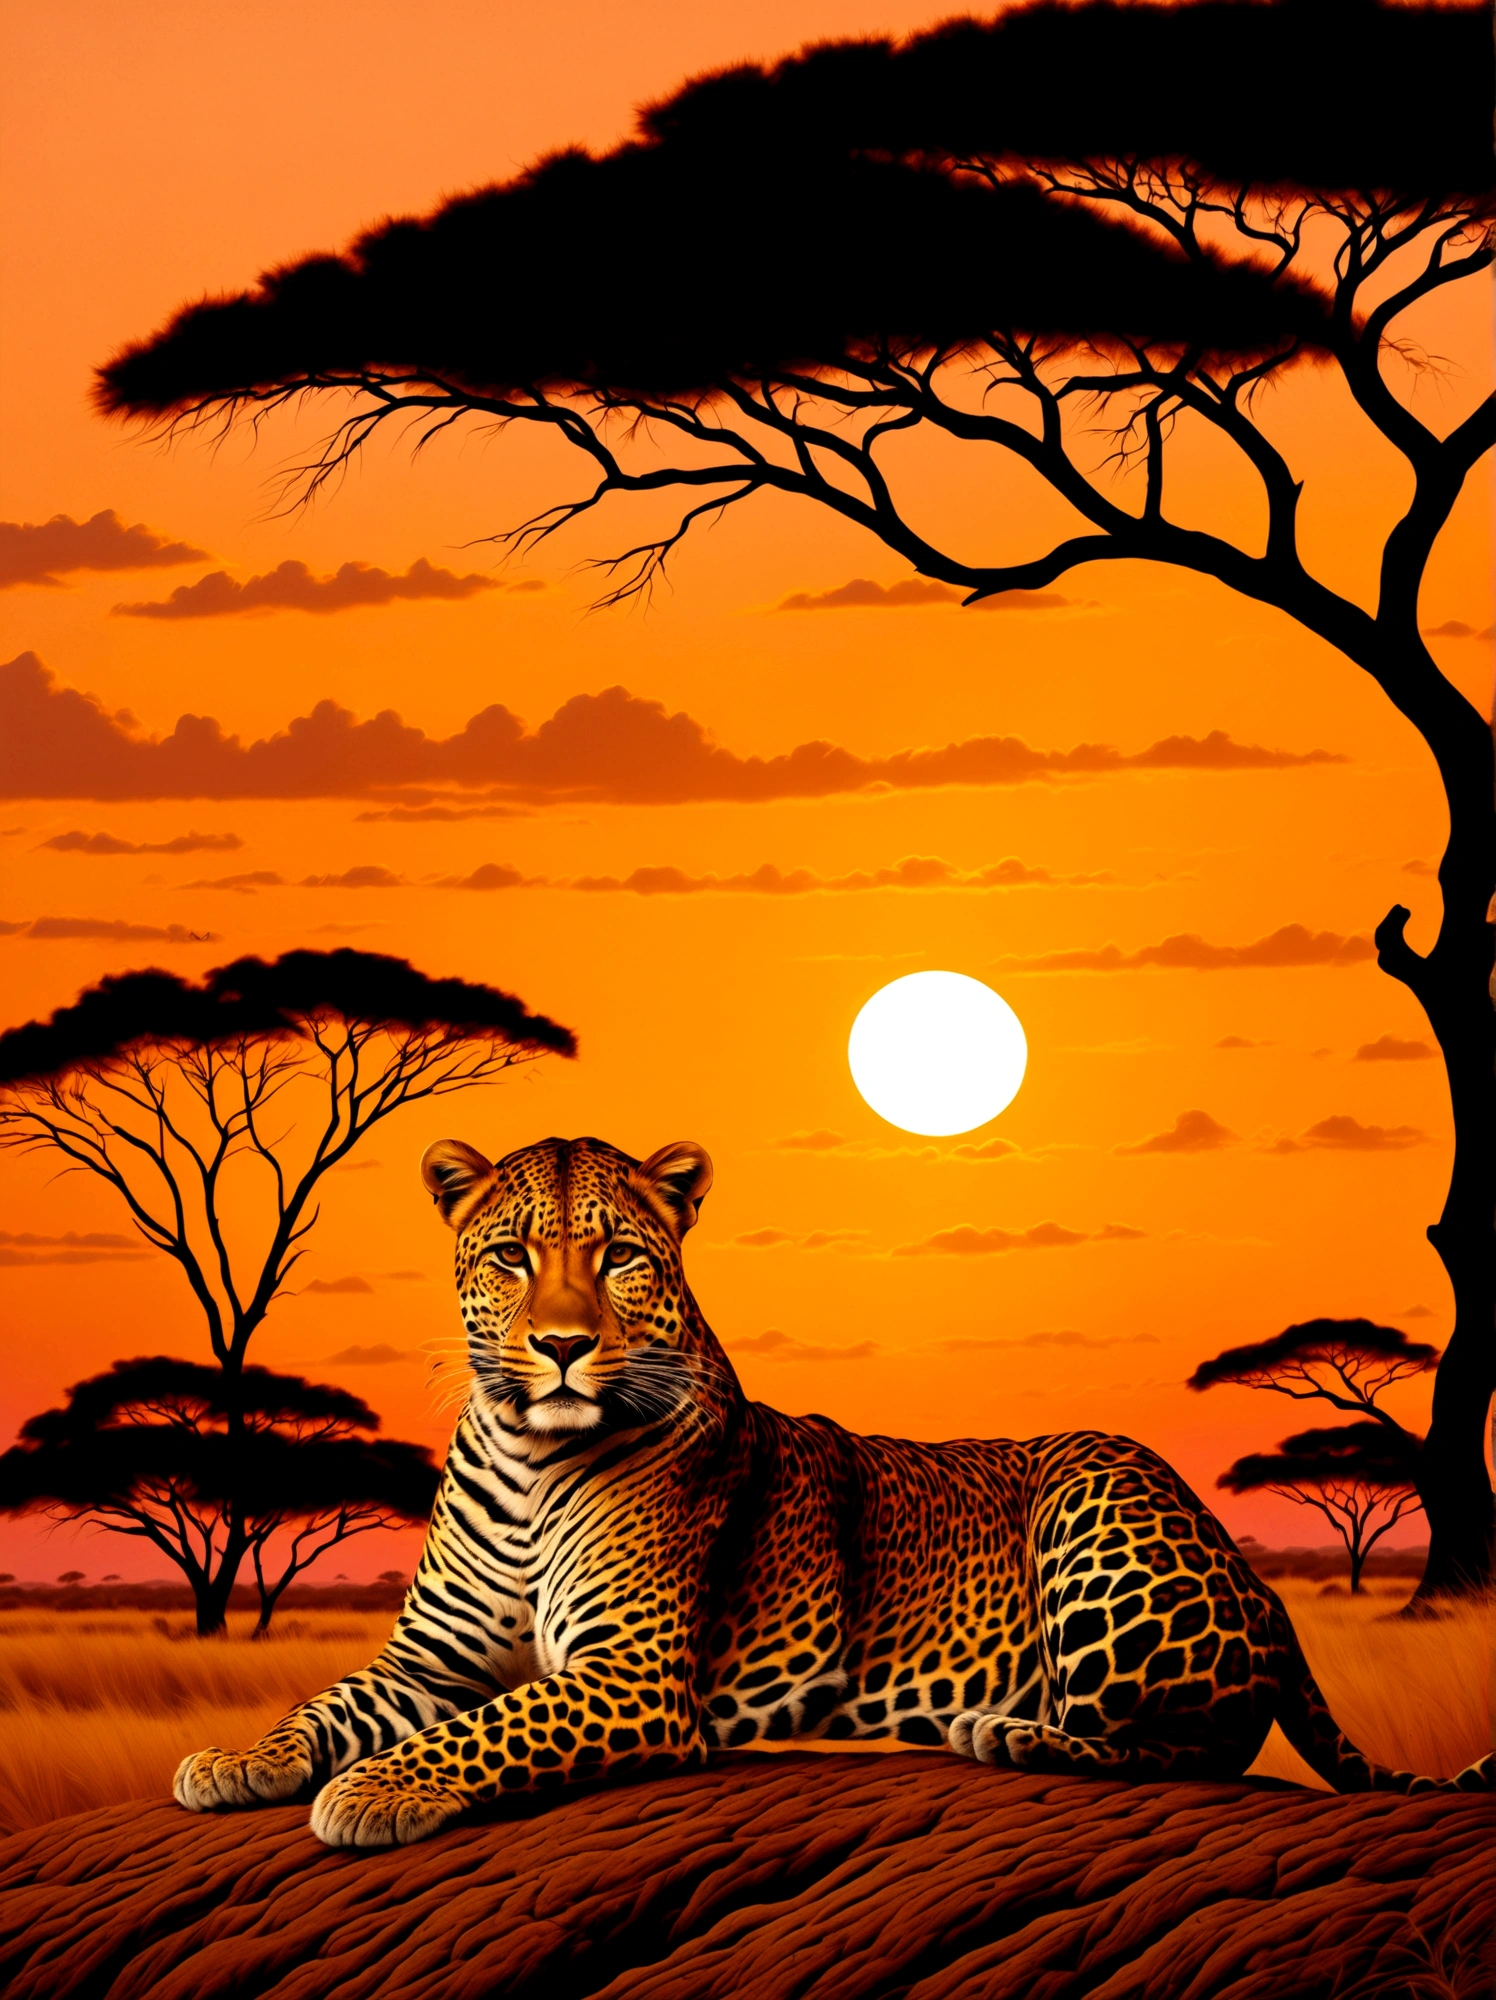 Un léopard avec une couronne dorée posée sur la tête, majestueusement posé sur fond de coucher de soleil dans la savane. La couronne scintille légèrement sous la lumière du soleil déclinante alors que la créature surveille son environnement.. Les teintes chaudes orange et rose du soleil couchant drapent la scène, mettant en valeur le pelage vibrant du léopard. Des silhouettes d&#39;acacias peuvent être vues au loin, parsemant le vaste paysage.